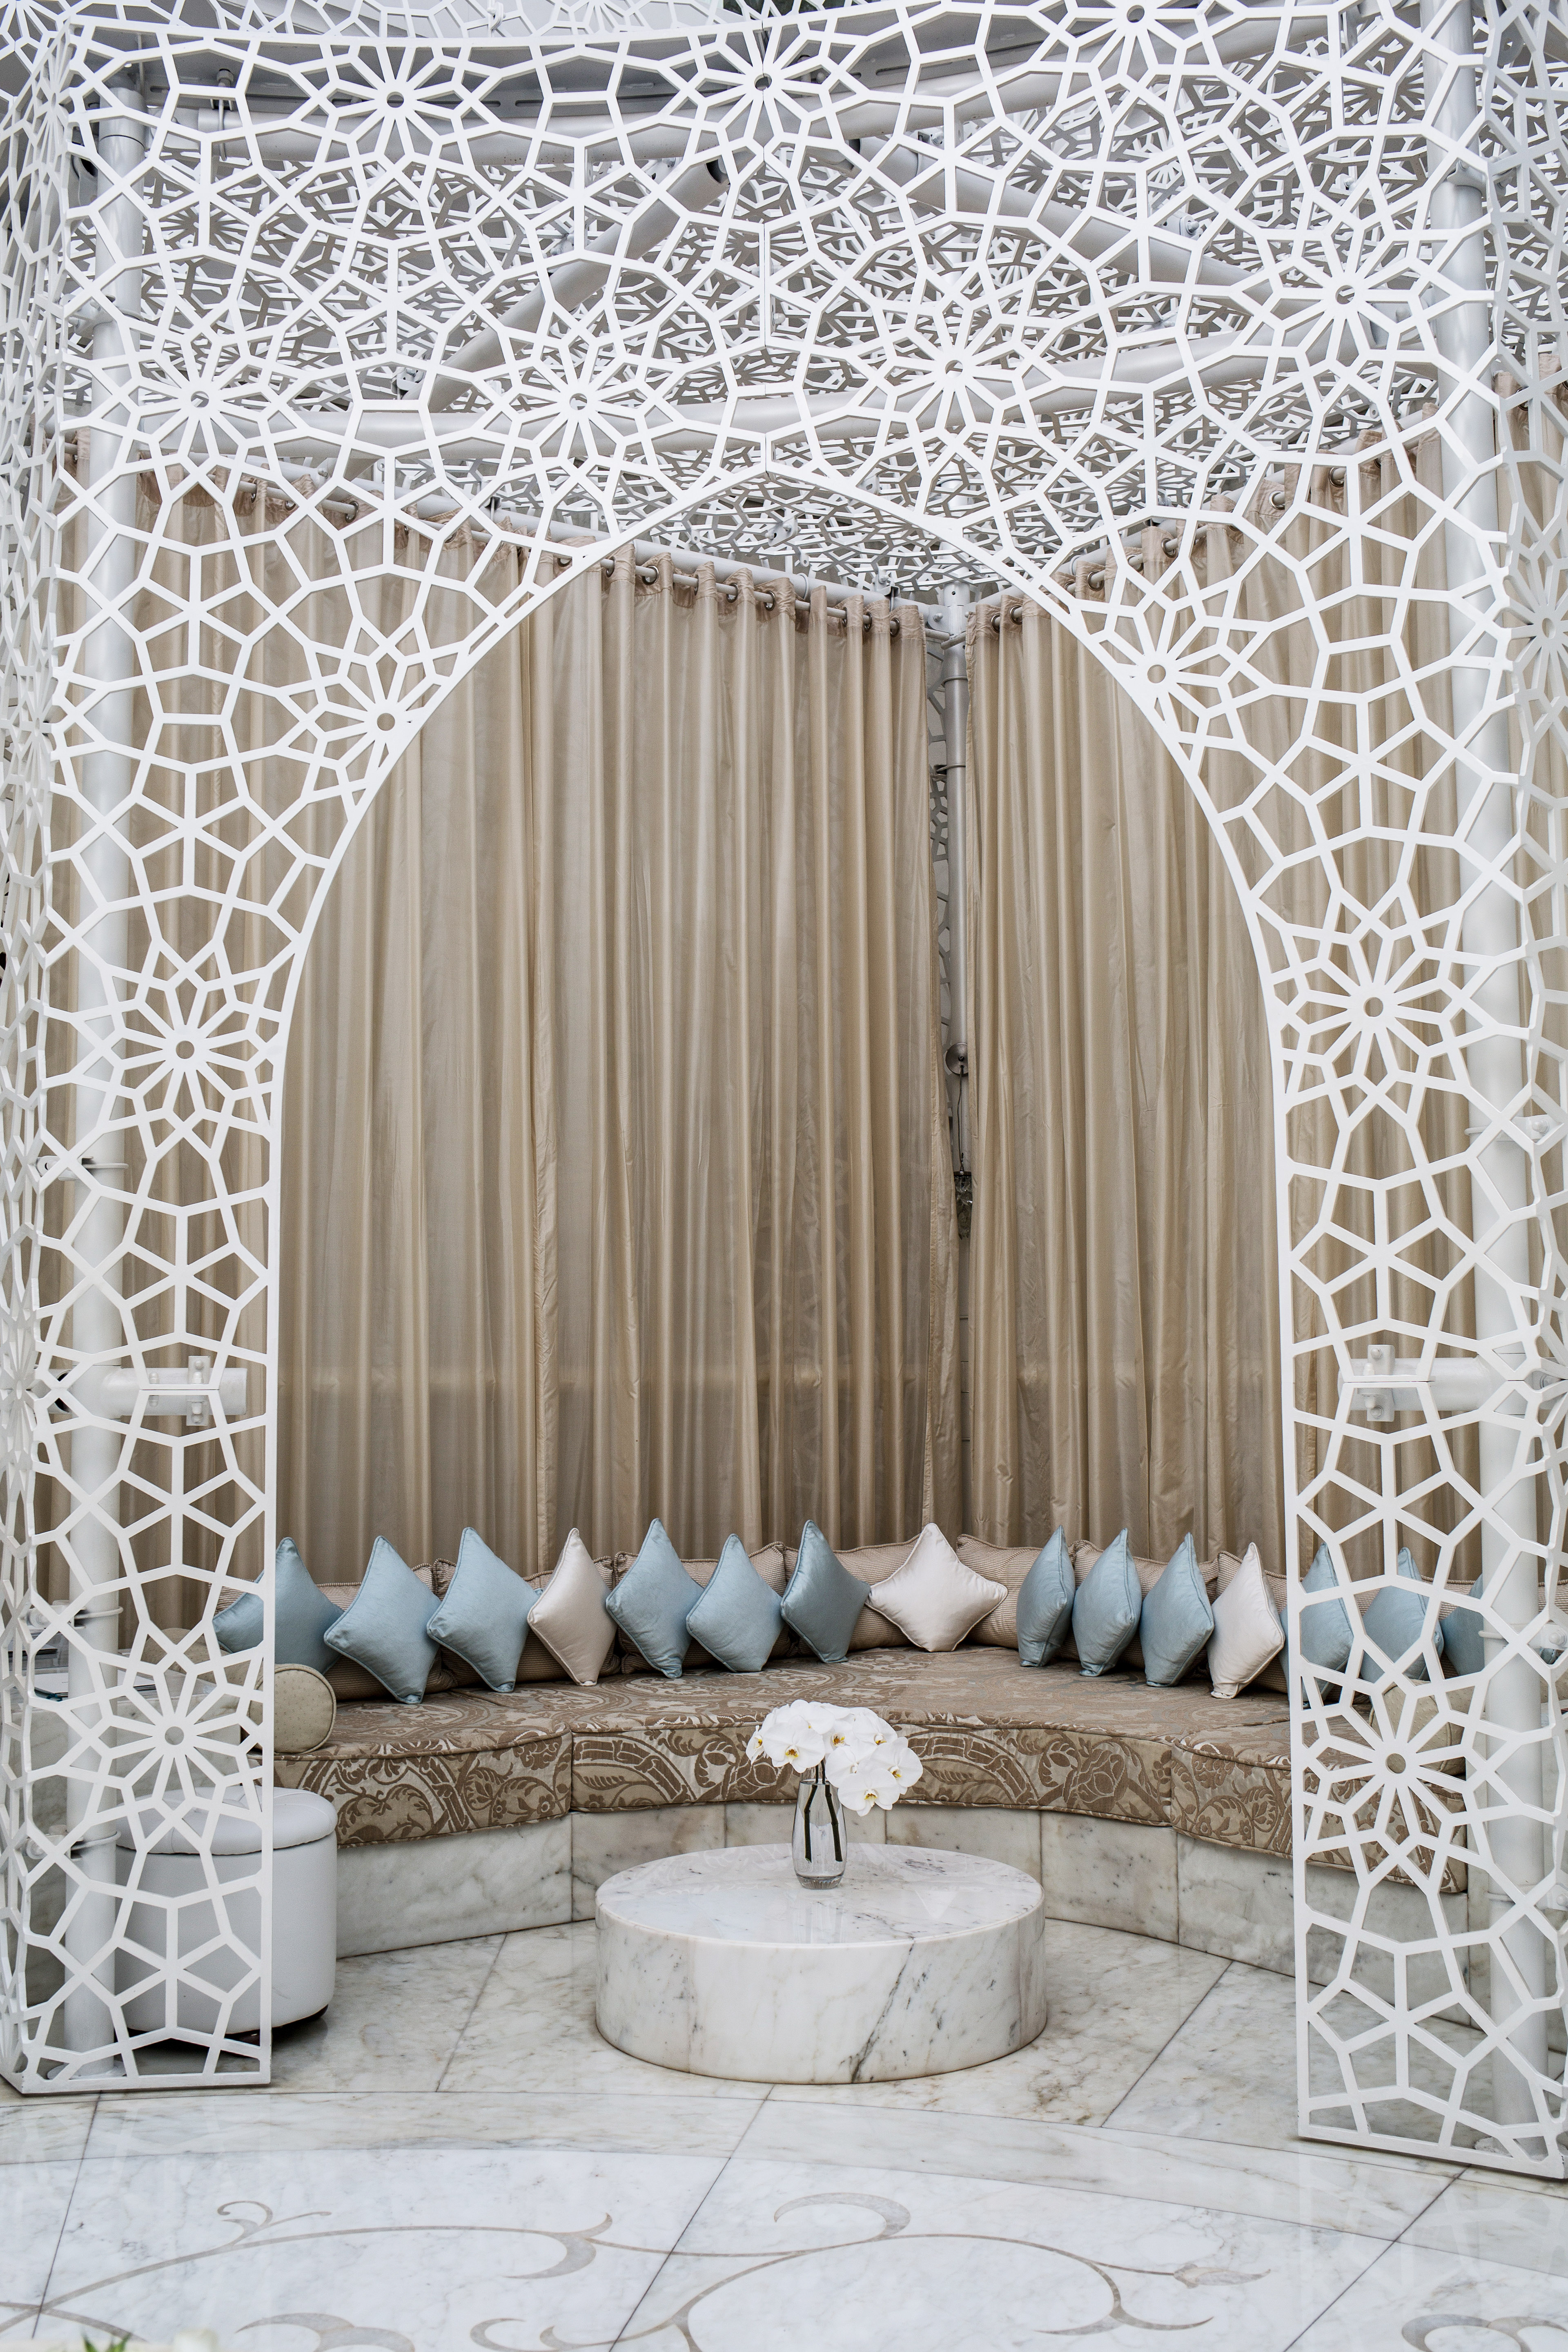 Royal Mansour Marrakech – A Dreamy Spa Day